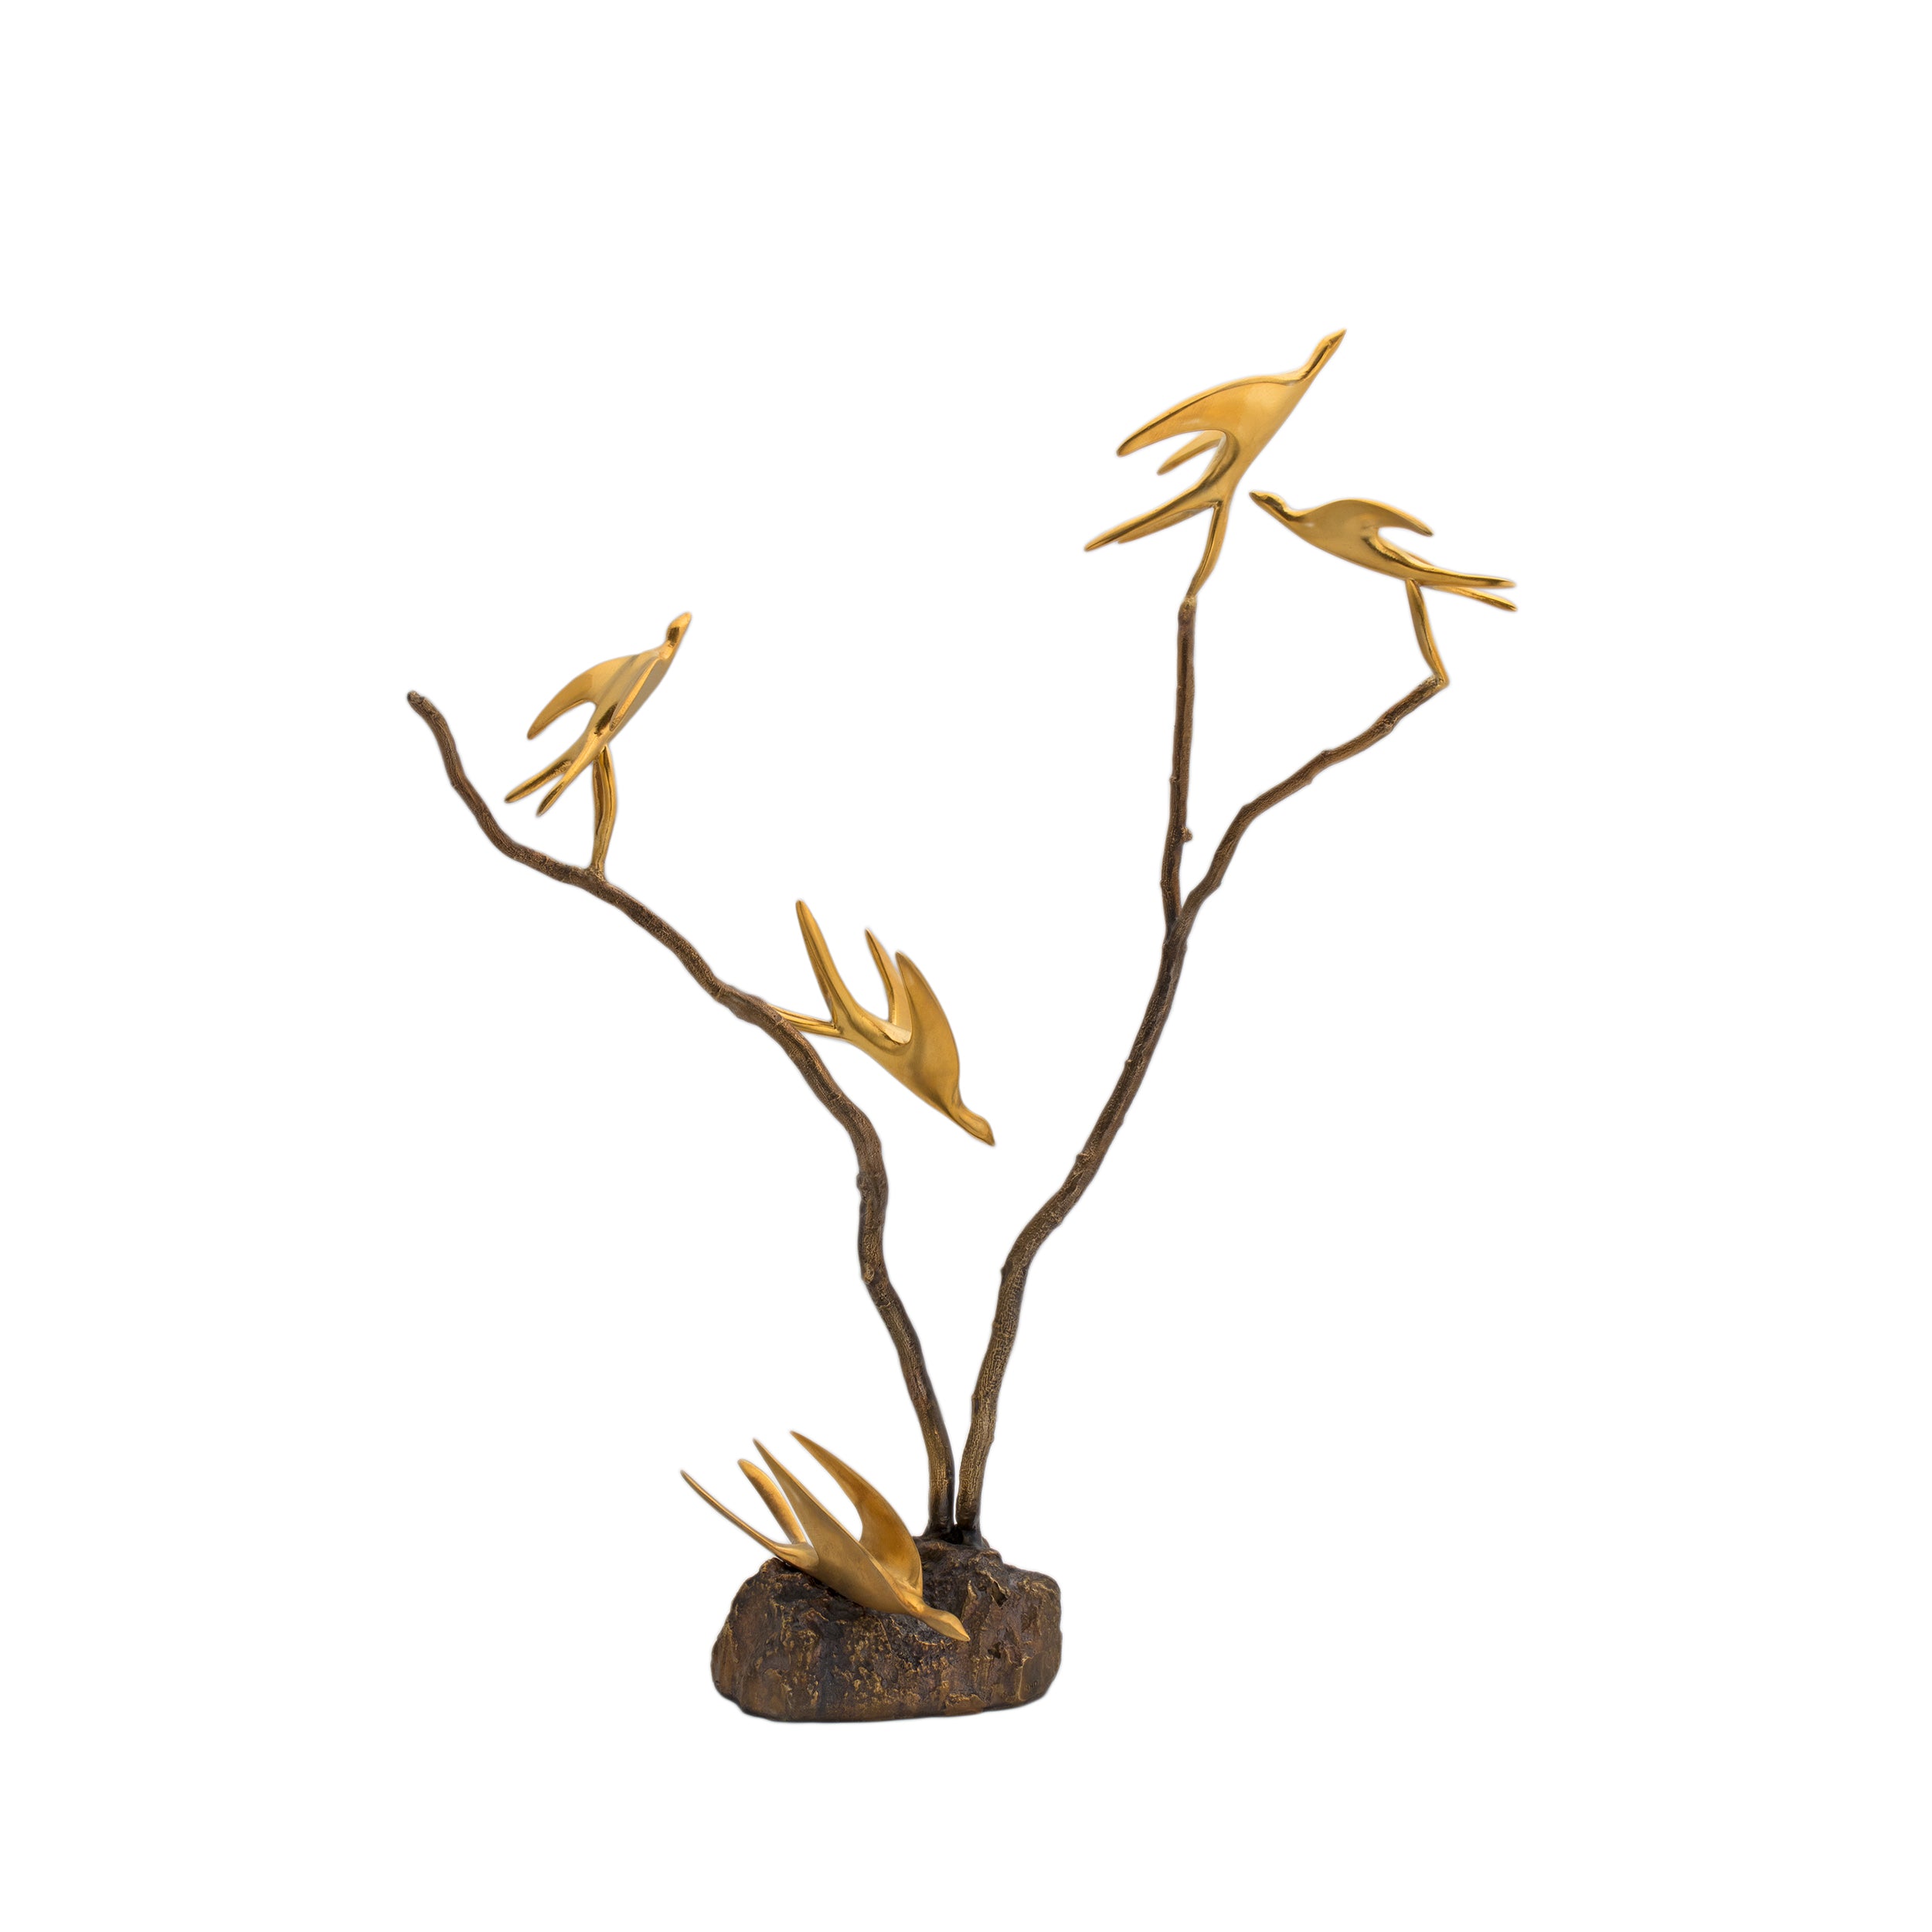 5 Birds On Sculpted Tree - Model 2